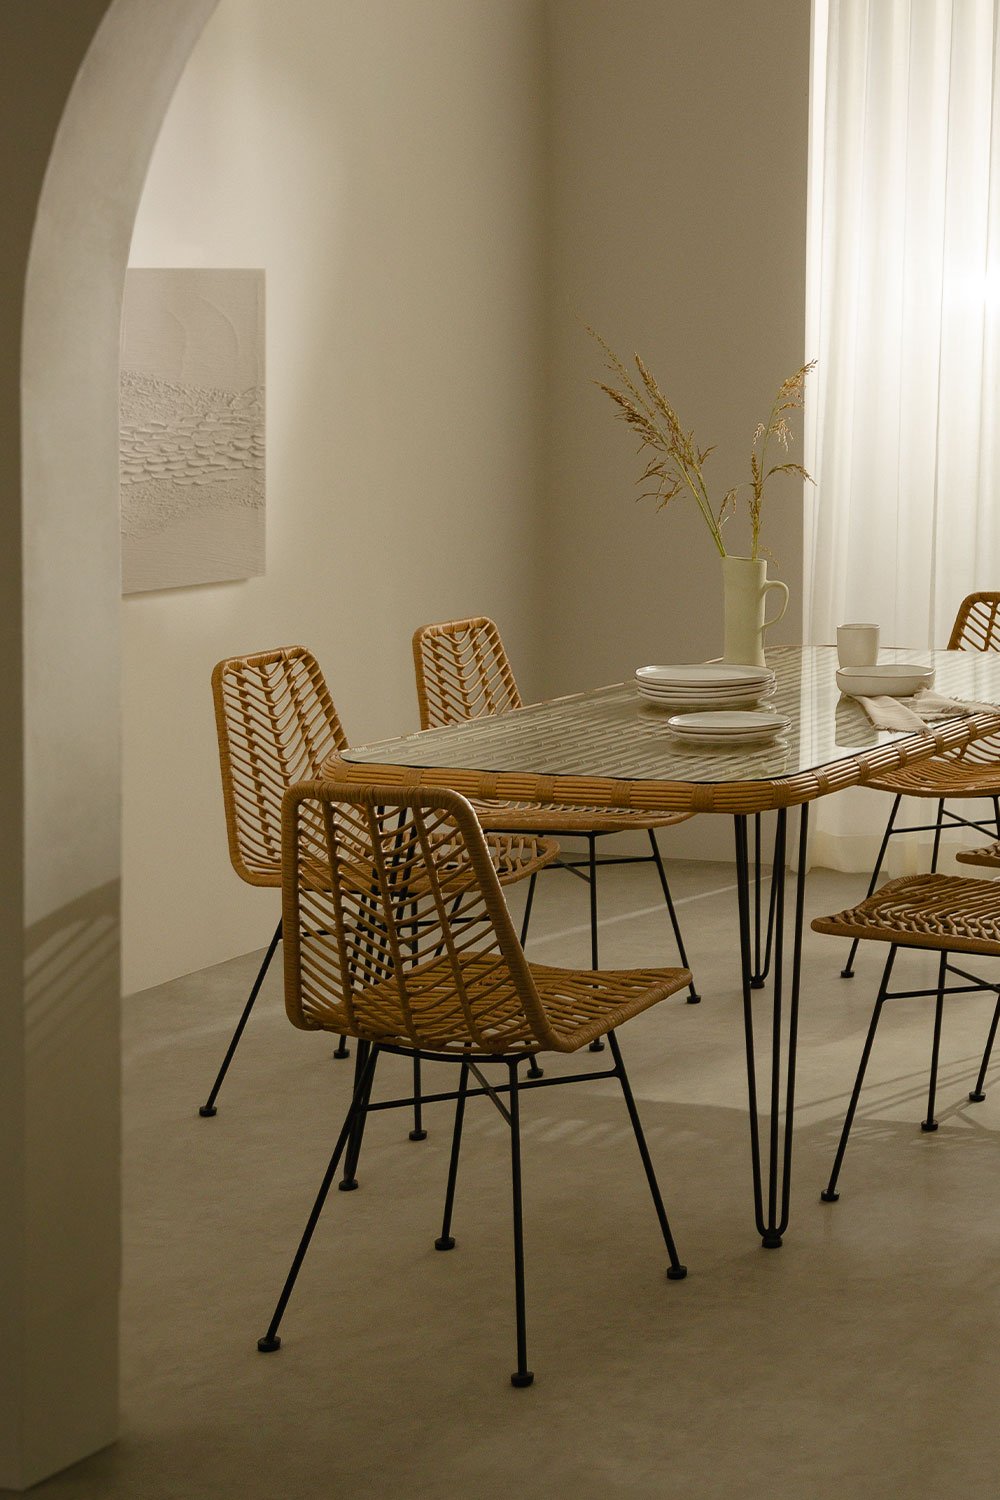  Rechthoekige tafelset in synthetisch riet (180x90 cm) Leribert en 6 eetkamerstoelen in synthetisch rotan naturel Gouda, galerij beeld 1